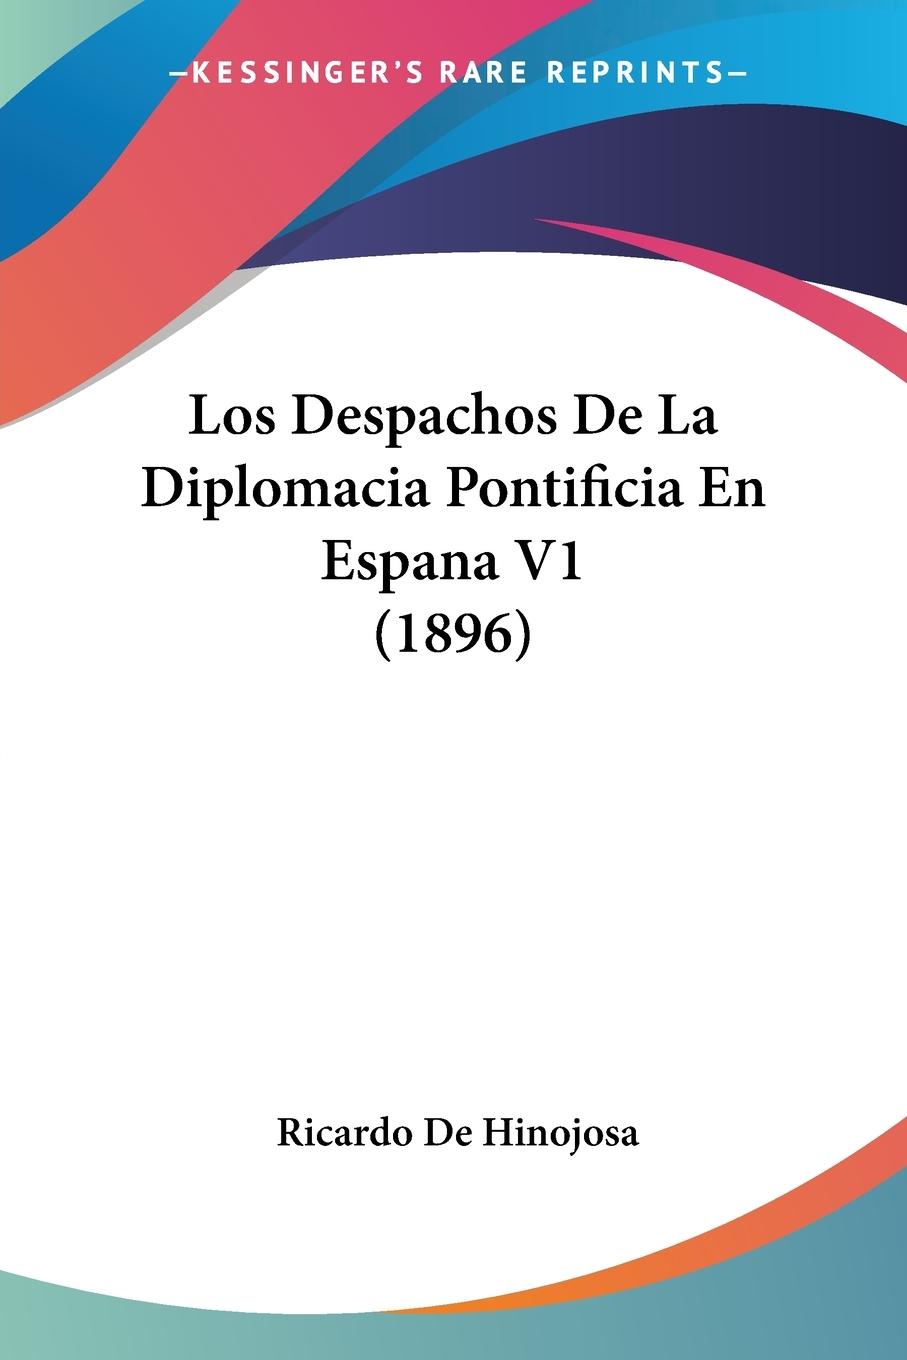 Los Despachos De La Diplomacia Pontificia En Espana V1 (1896) - De Hinojosa, Ricardo